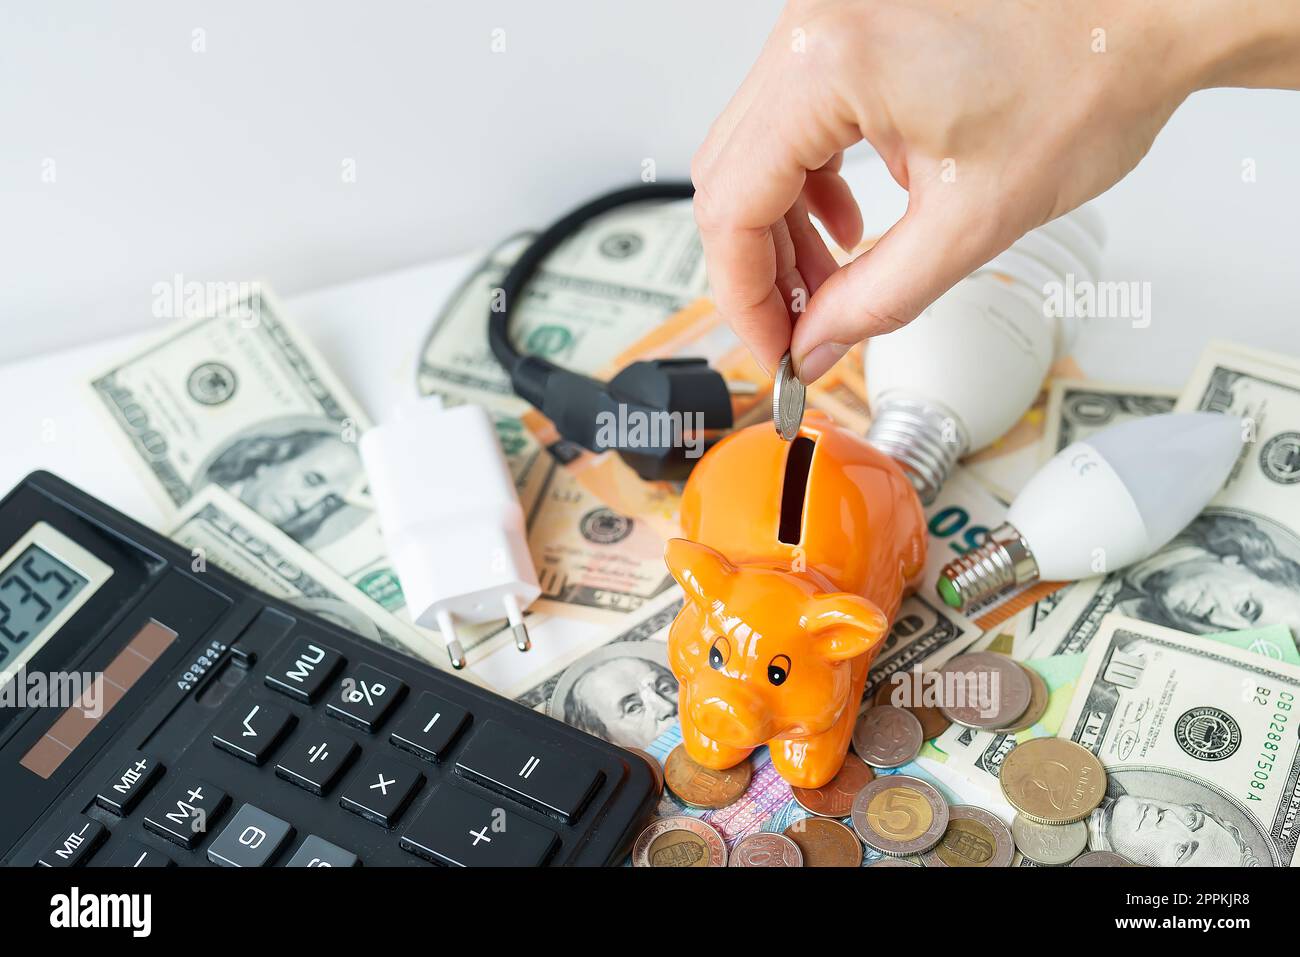 Die Hand einer Frau steckt eine Münze in ein orangefarbenes Sparschwein, in Form eines Schweins, und spart so Geld. Taschenrechner, Euro- und Dollar-Banknoten, Münzen. Steuerzeit, Rechnungszahlung, Zählrechner. Stockfoto